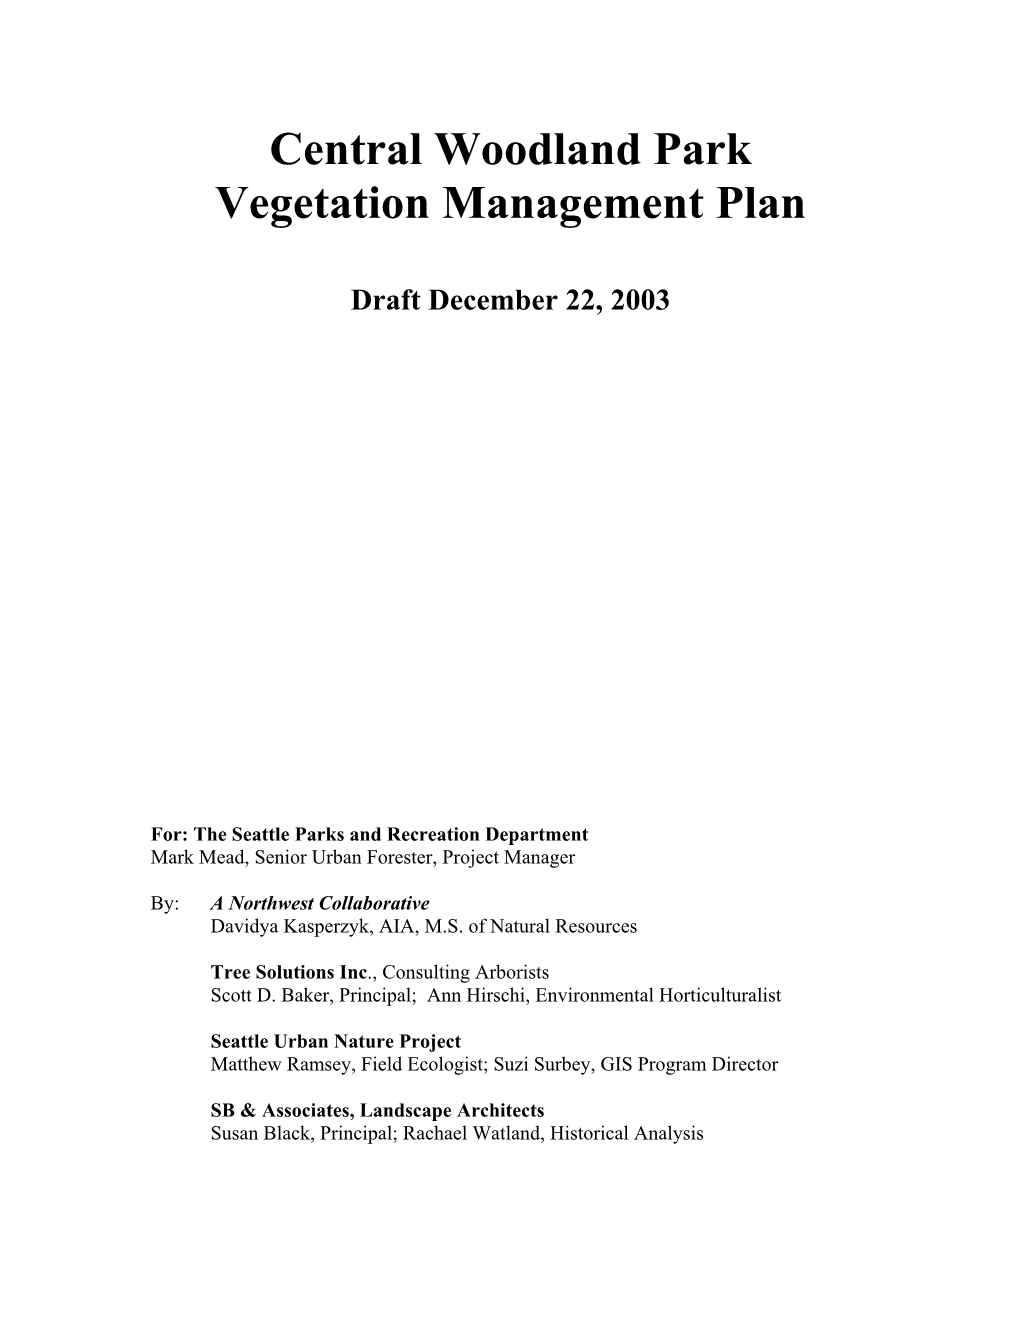 Central Woodland Park Vegetation Management Plan